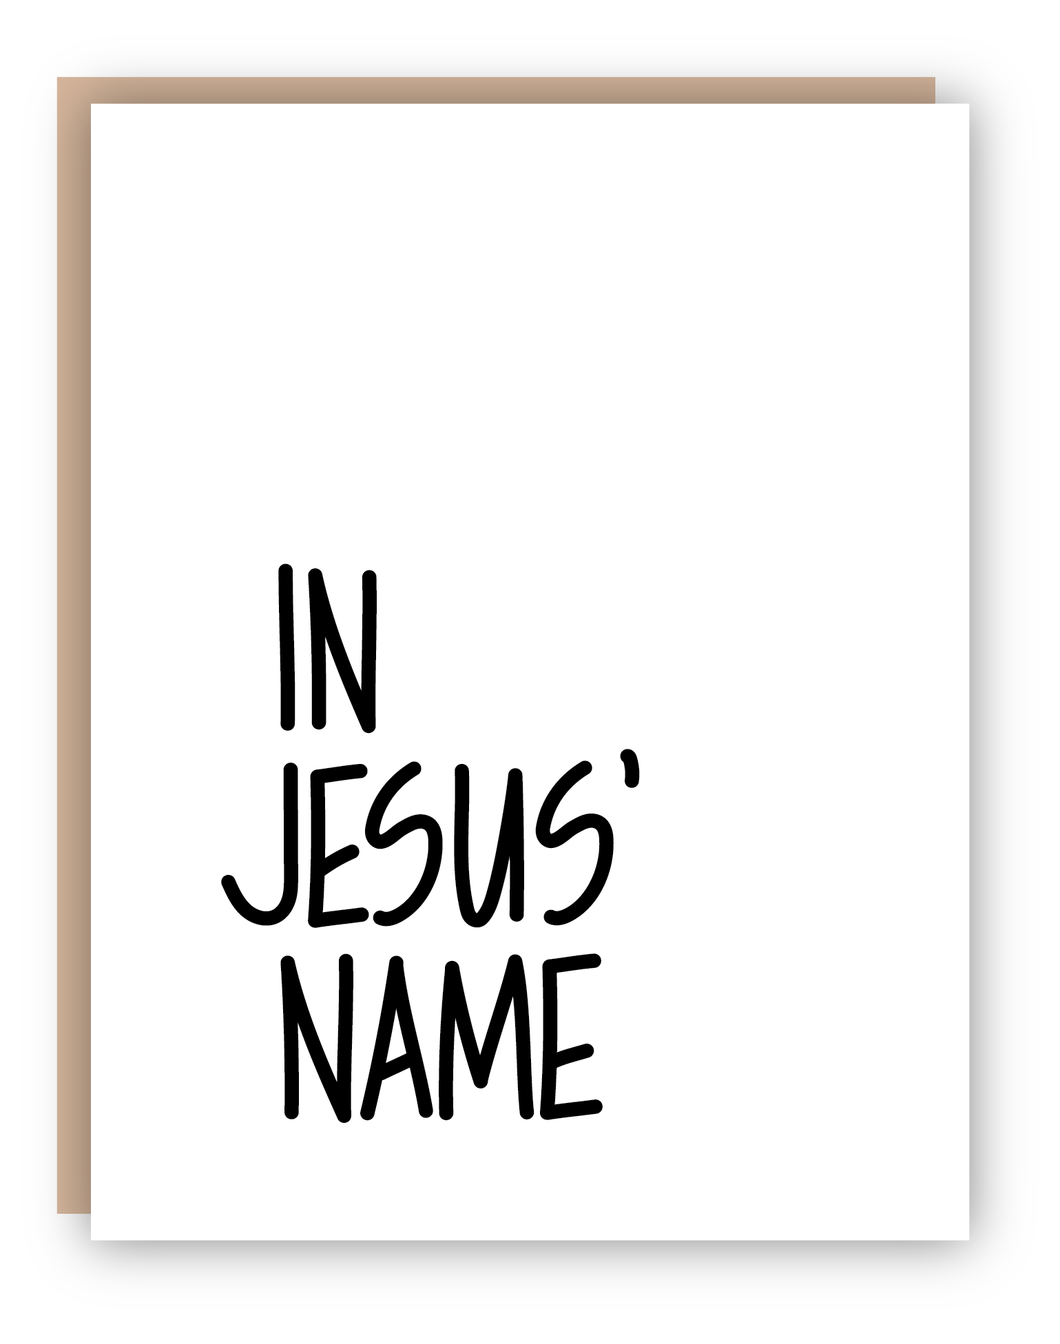 IN JESUS' NAME